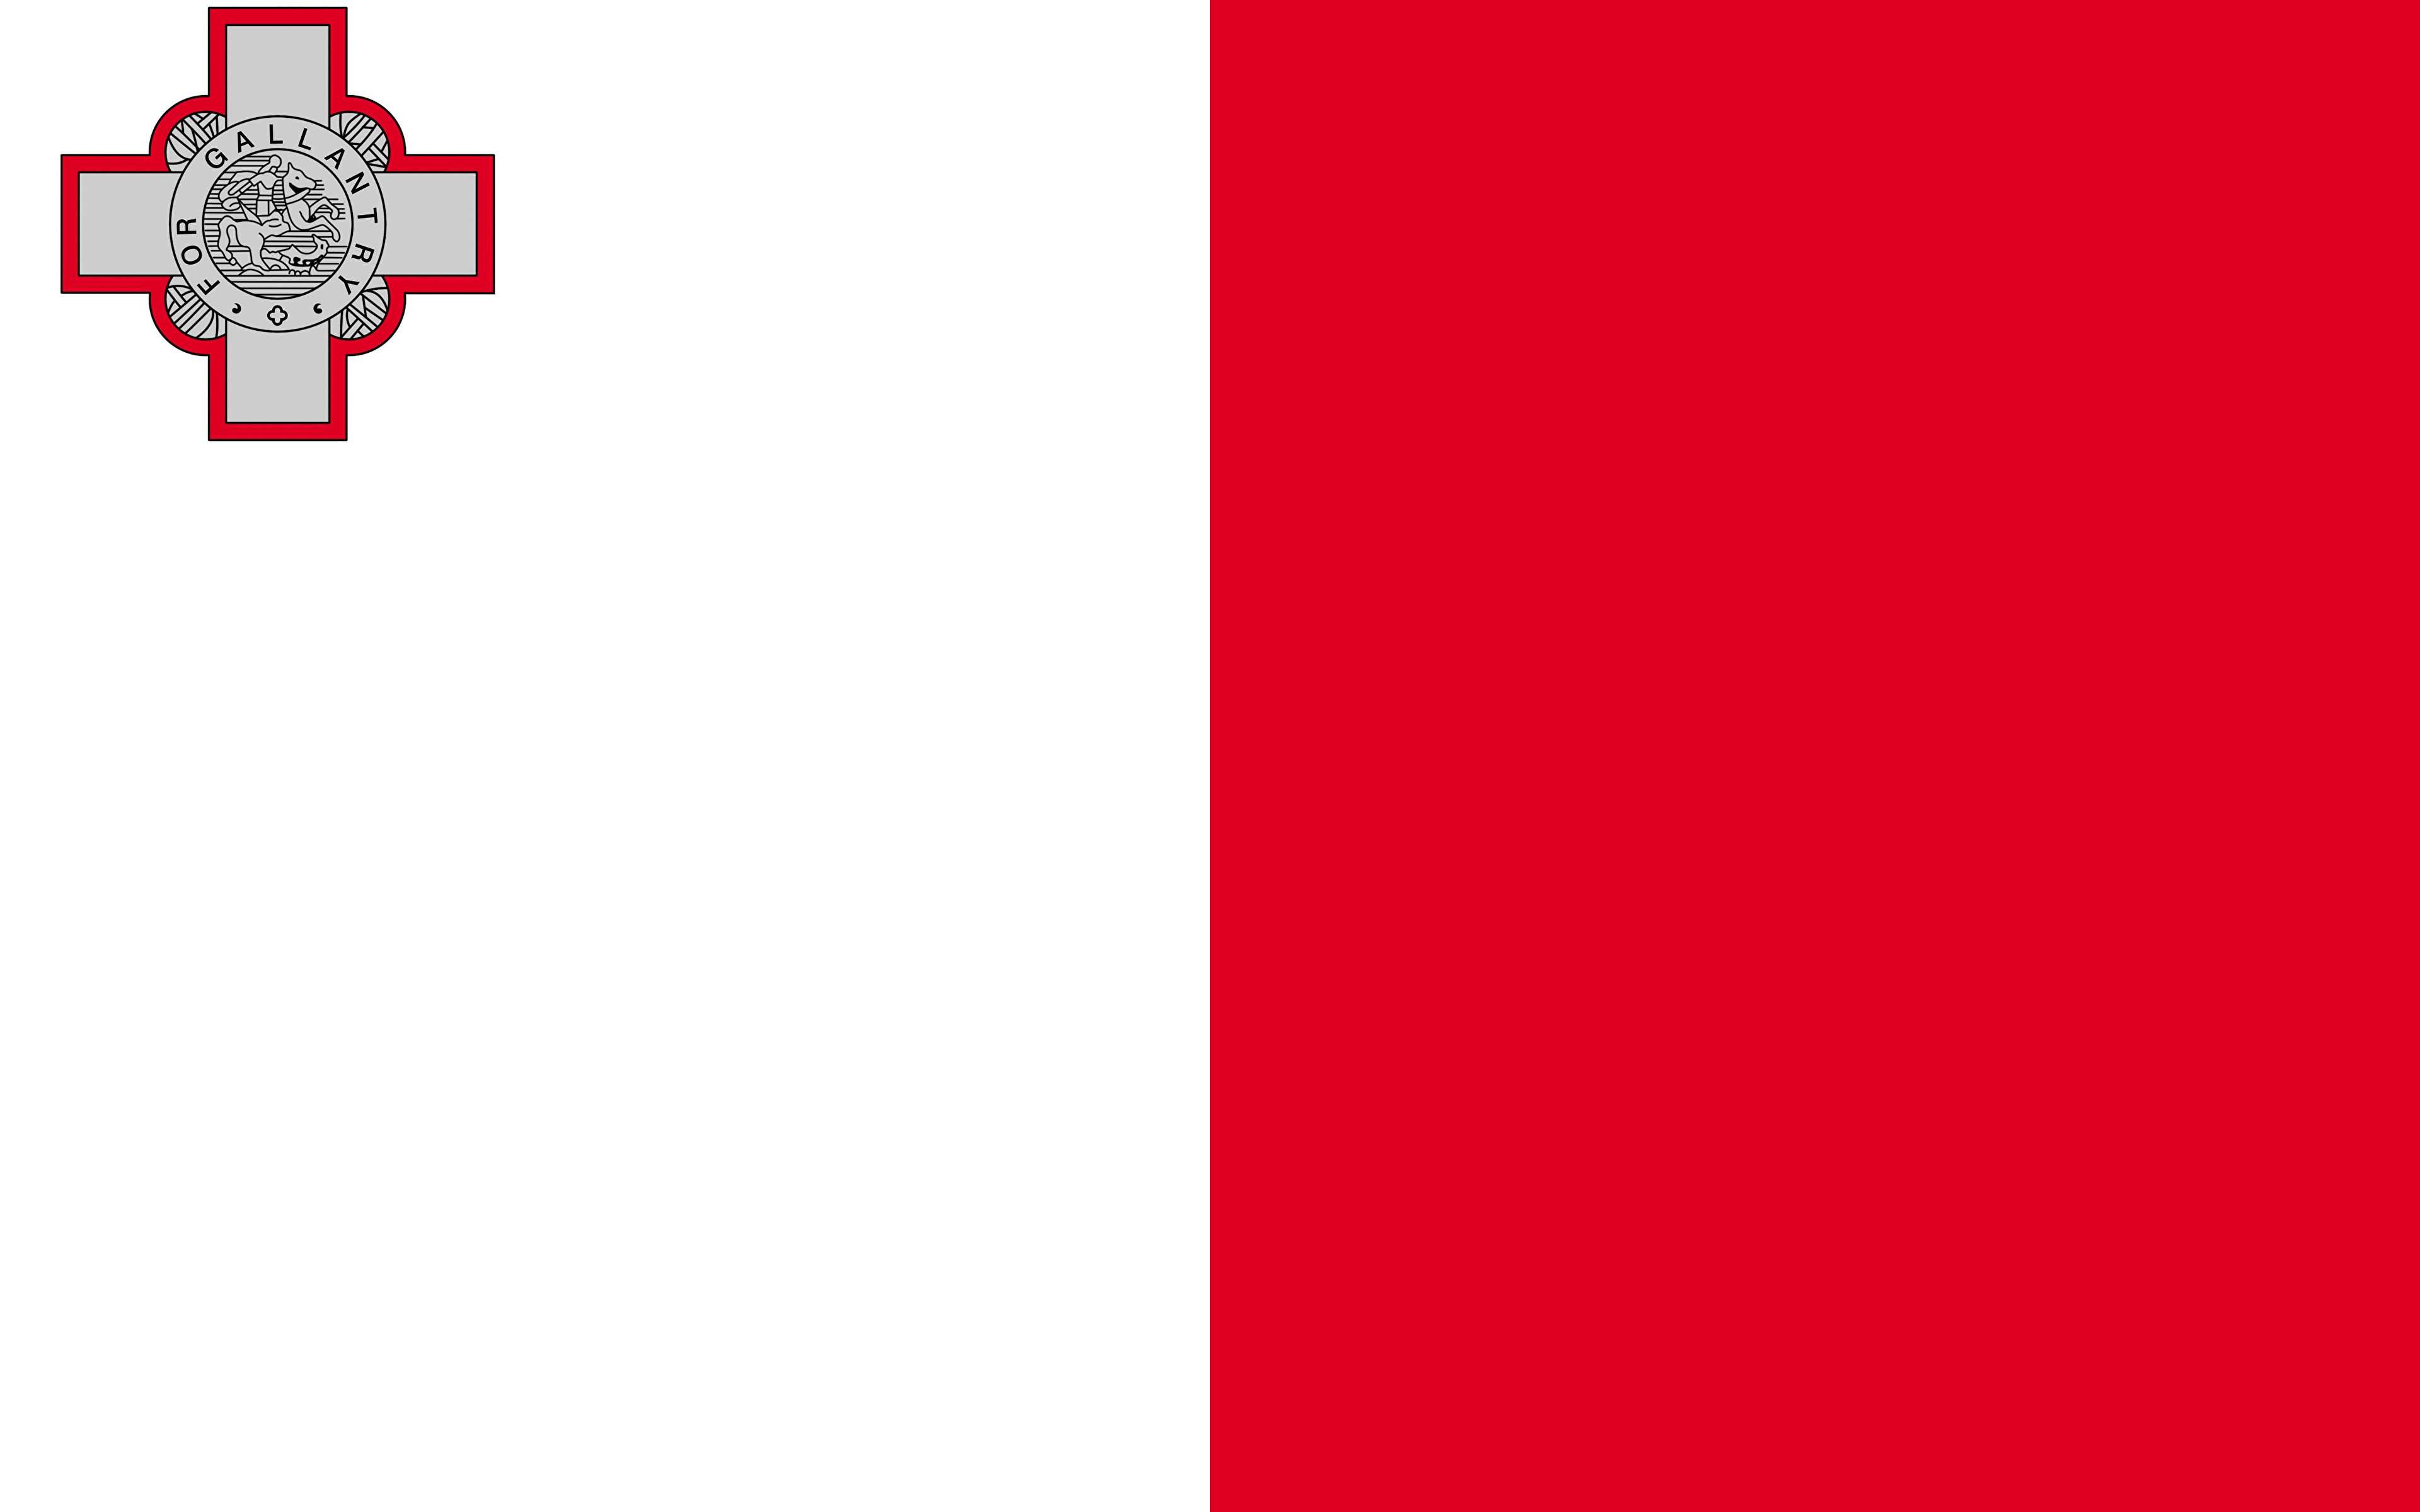 Malta Global Residency Program (вид на жительство и особый налоговый статус)